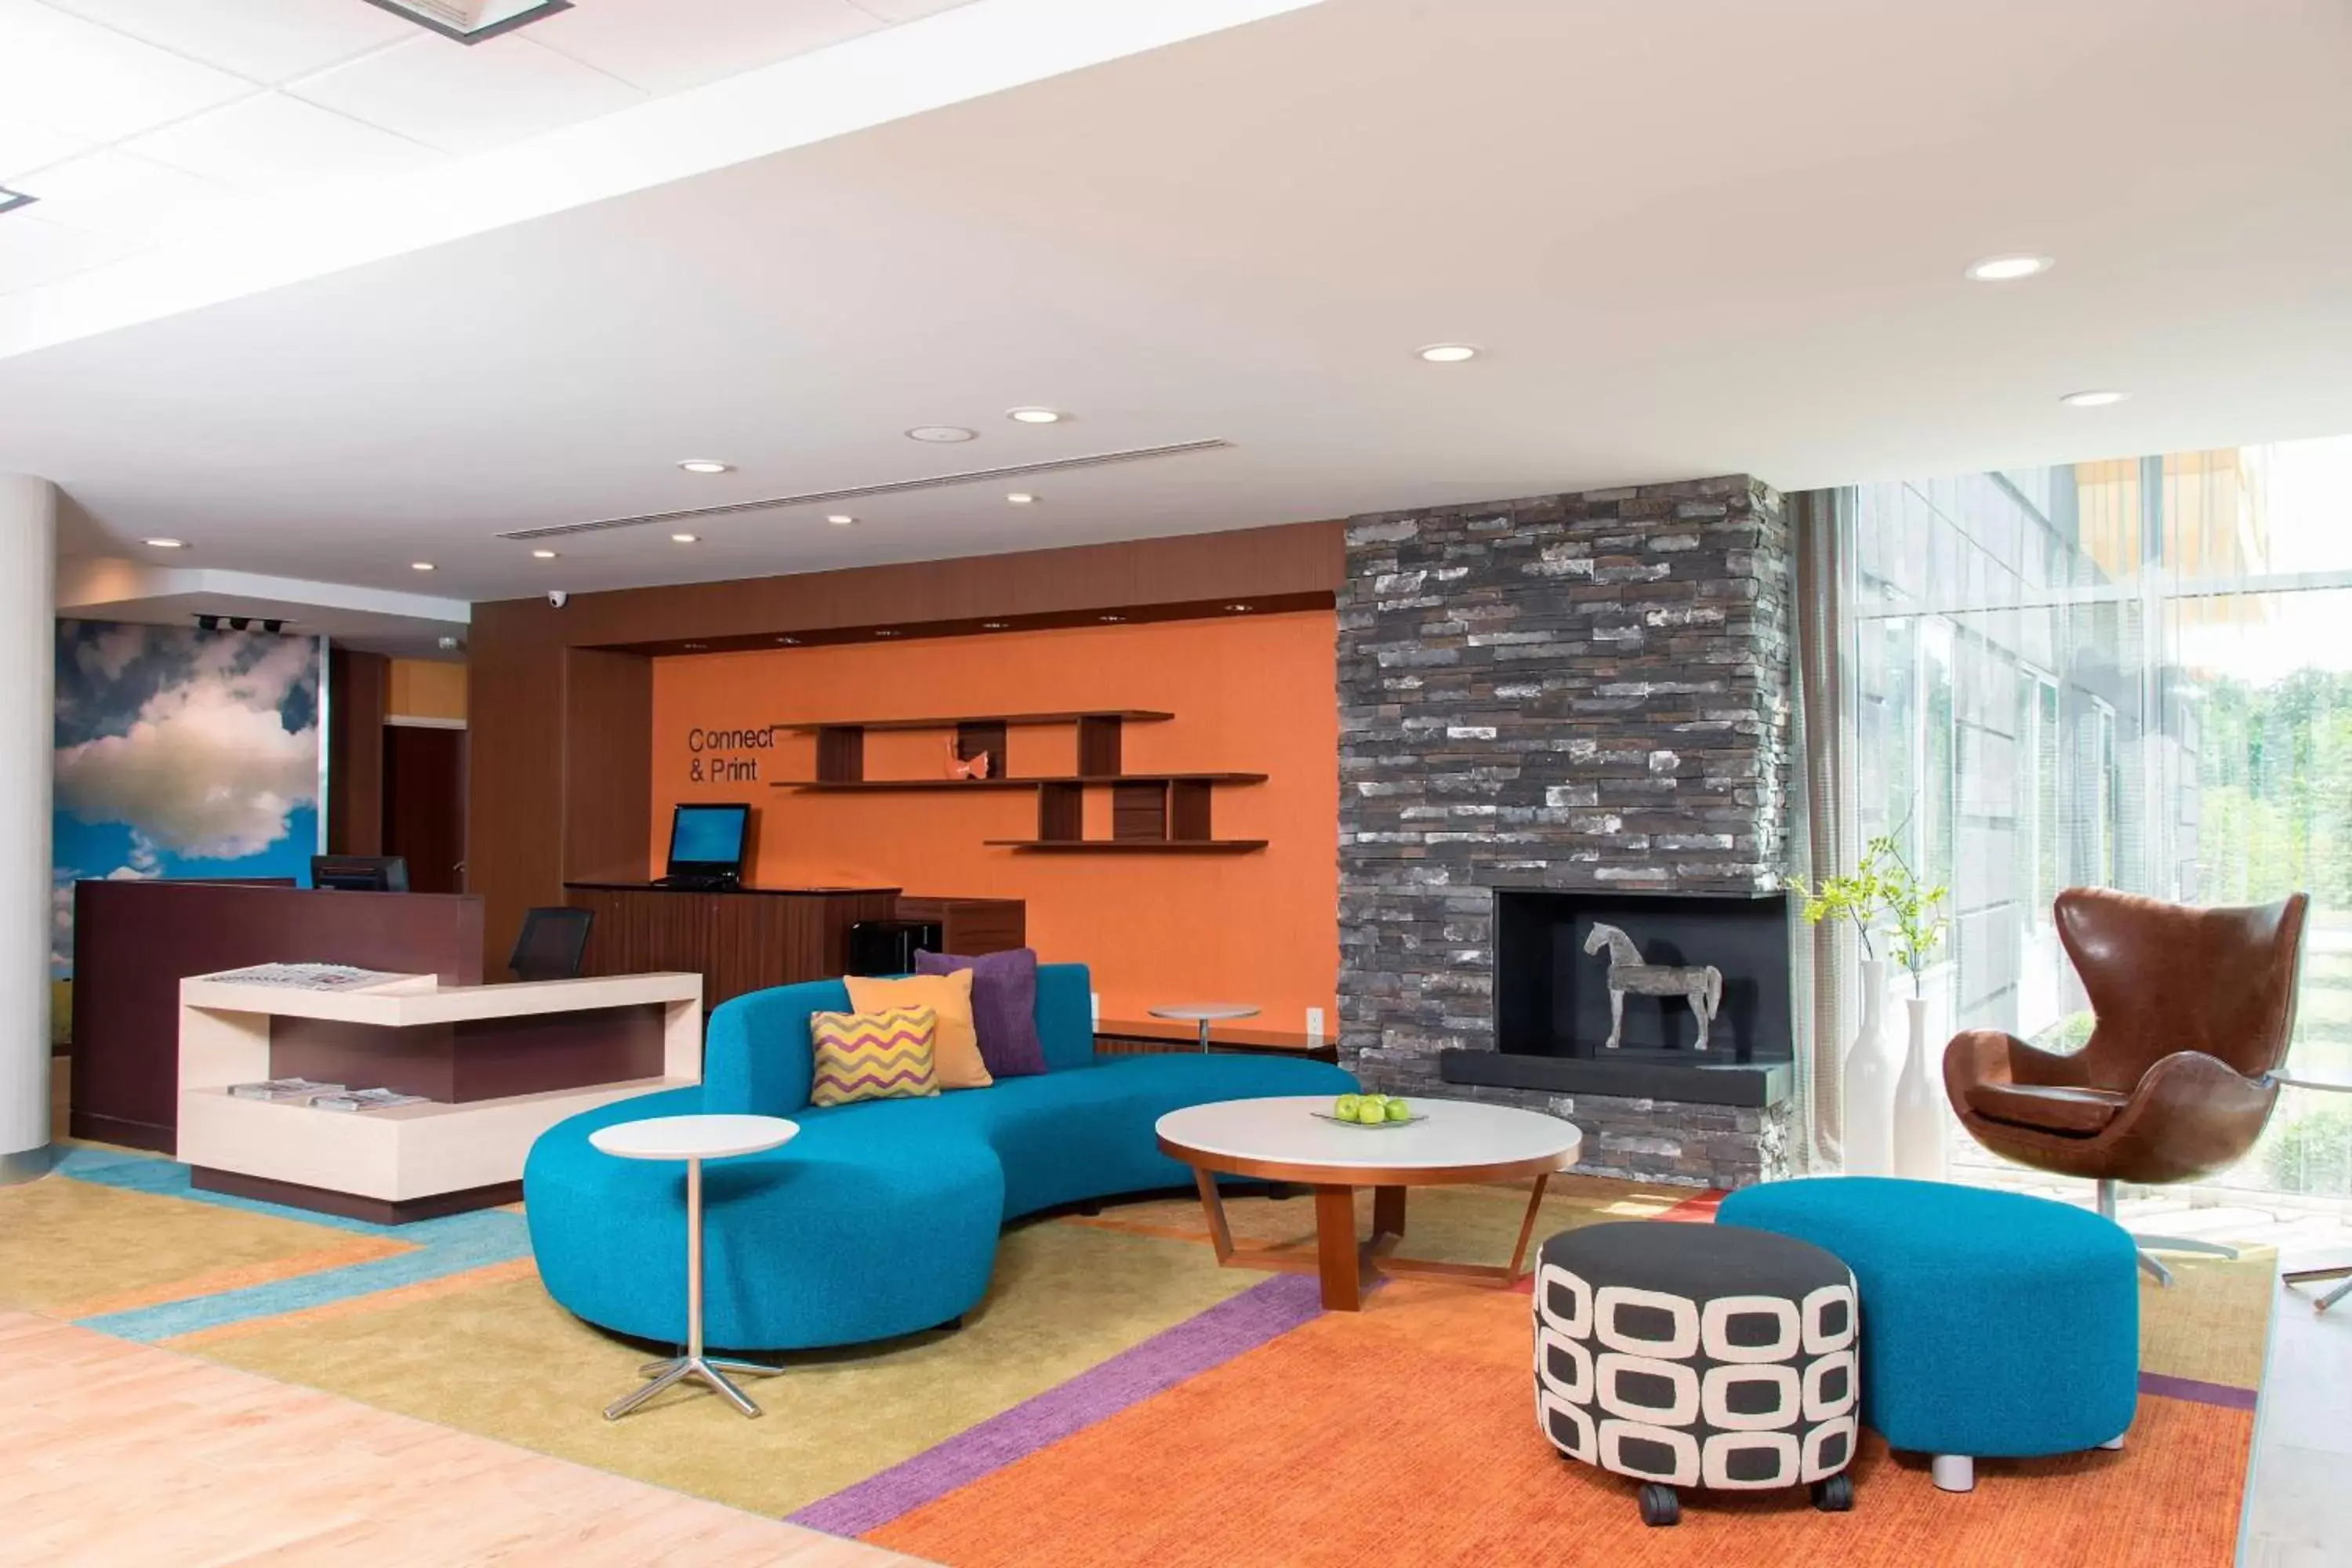 Lobby or reception, Seating Area in Fairfield Inn & Suites by Marriott Jackson Clinton